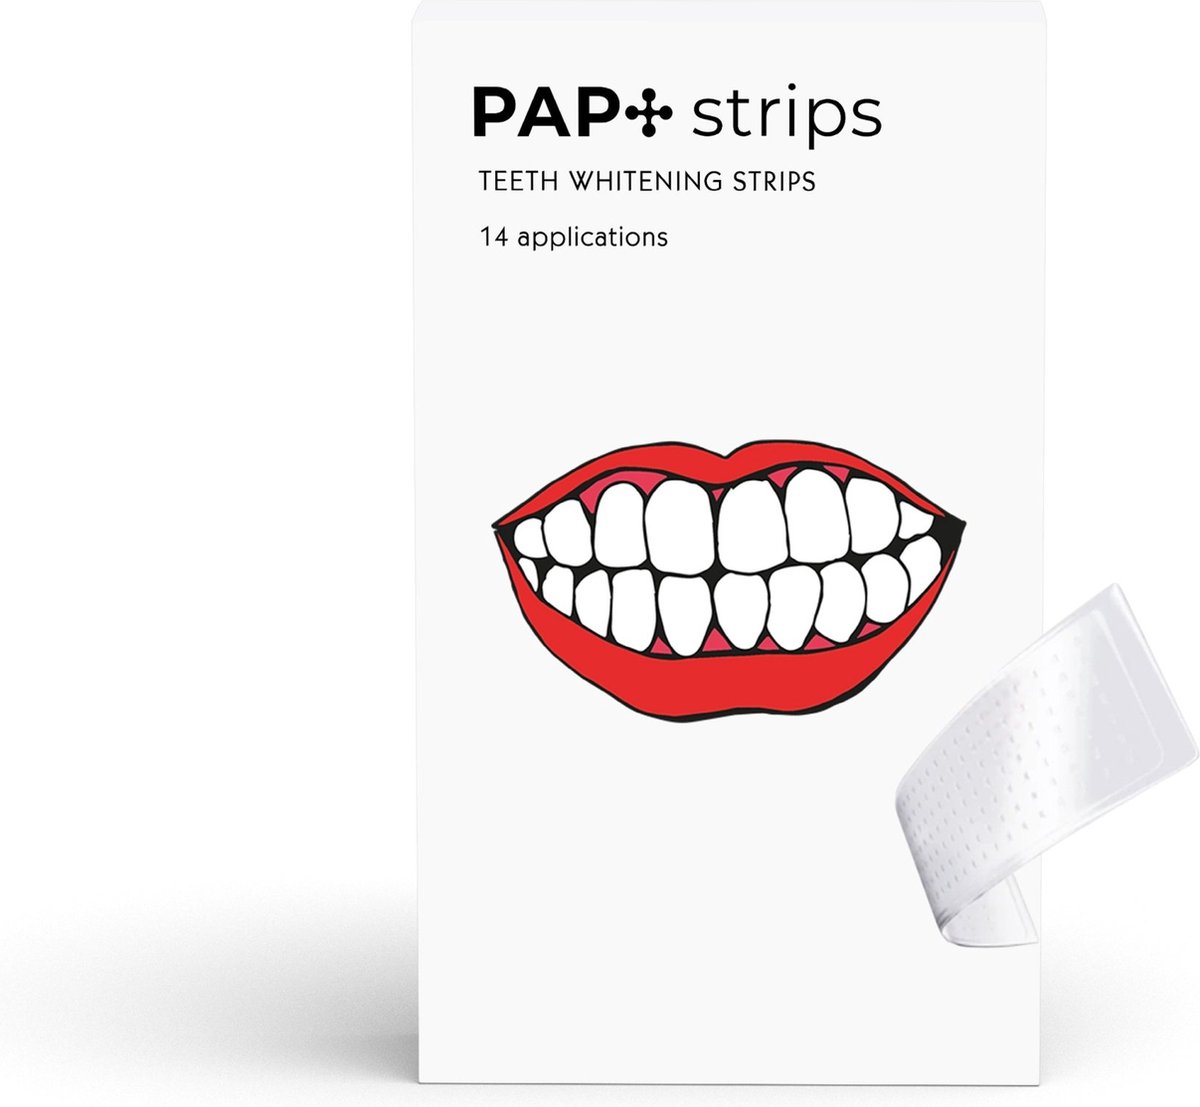 No Yellow Teeth - Professionele Tandenbleek Strips - 28 Strips - 100 % Natuurlijke Ingrediënten - Witte Tanden - Peroxidevrij - Teeth Whitening Strips - Tanden Bleken - Tandenbleekset